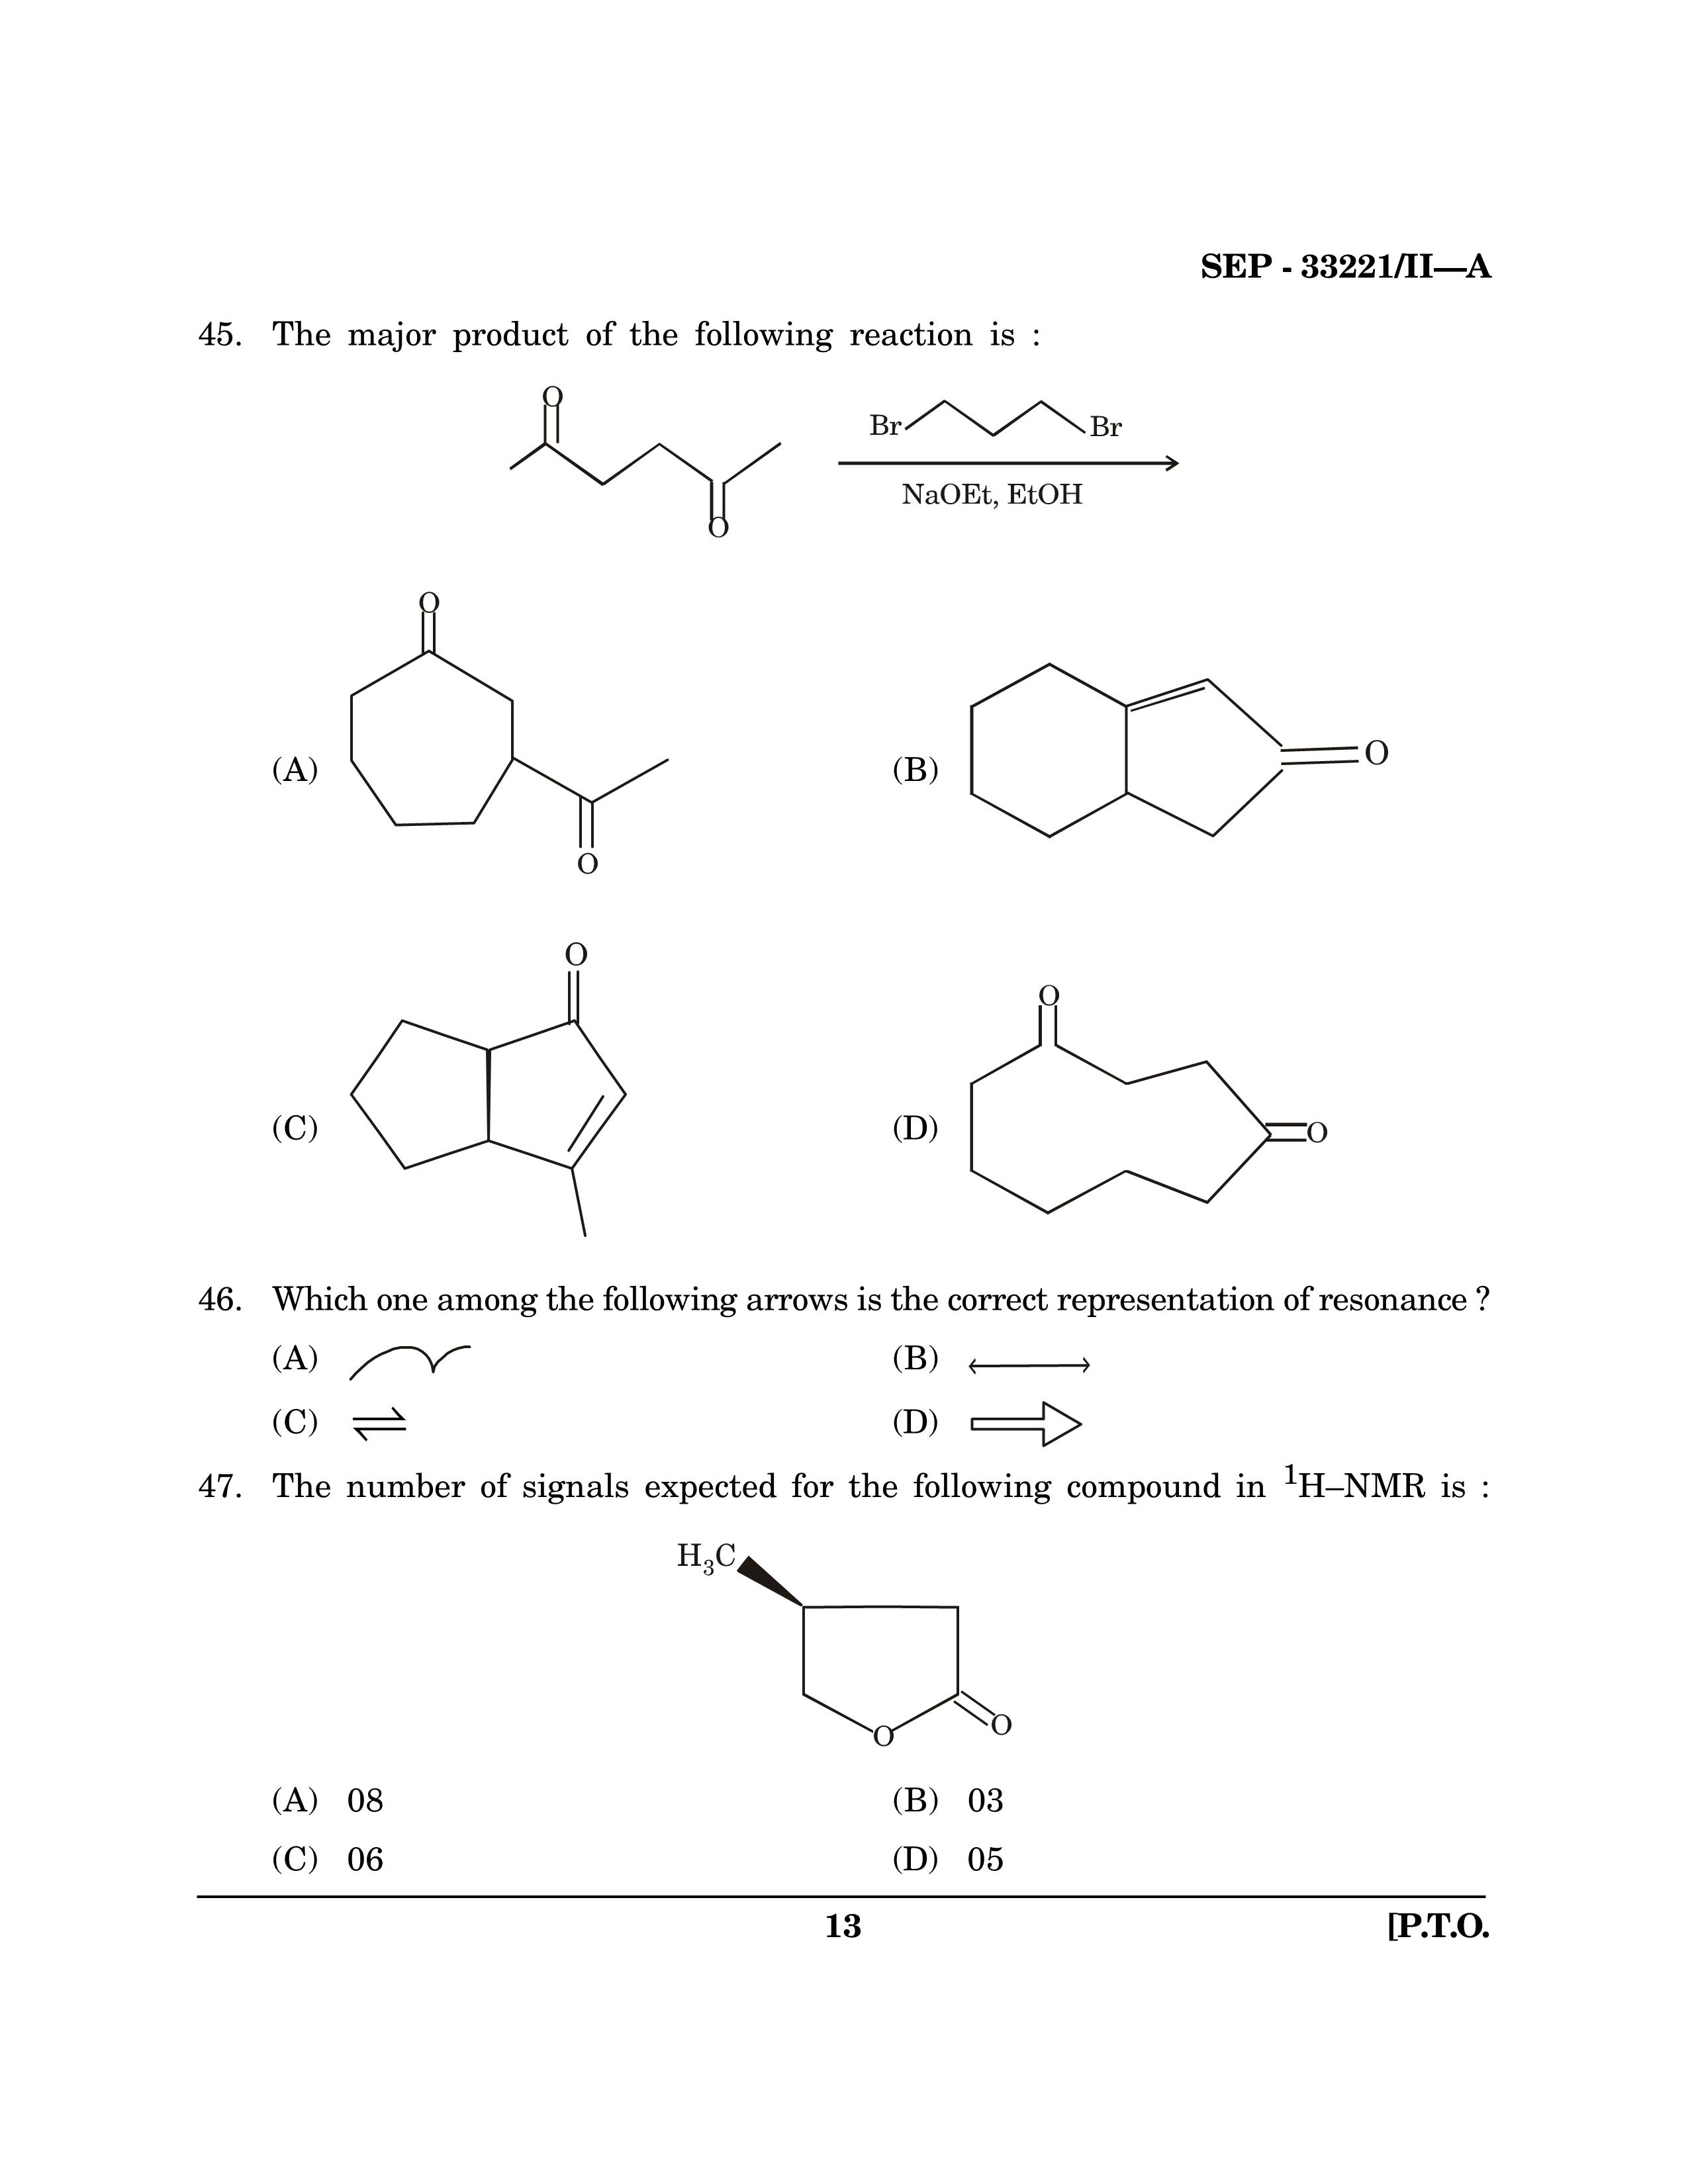 Maharashtra SET Chemical Sciences Exam Question Paper September 2021 12